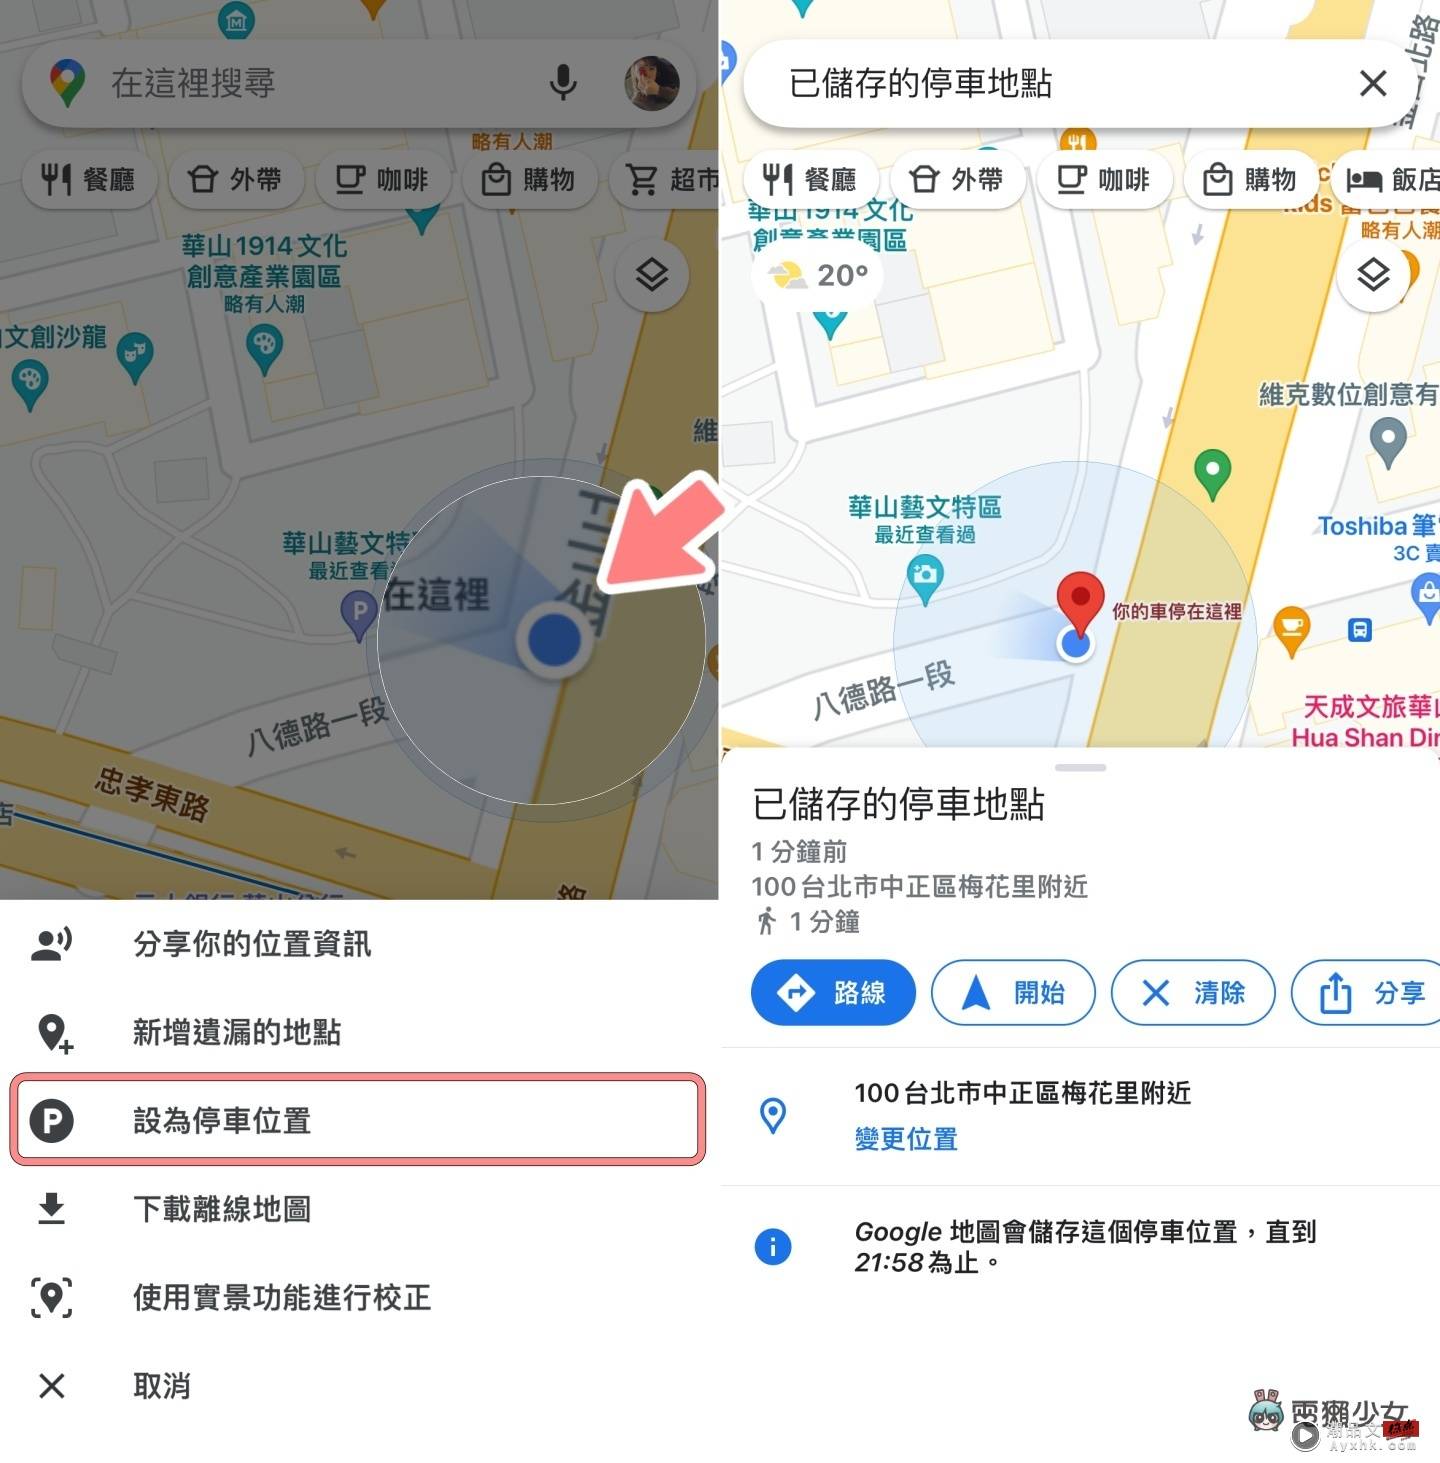 机车族必看！7 个 Google Maps 实用小技巧：路线选项、停车注记、用实景功能重新校正 数码科技 图4张